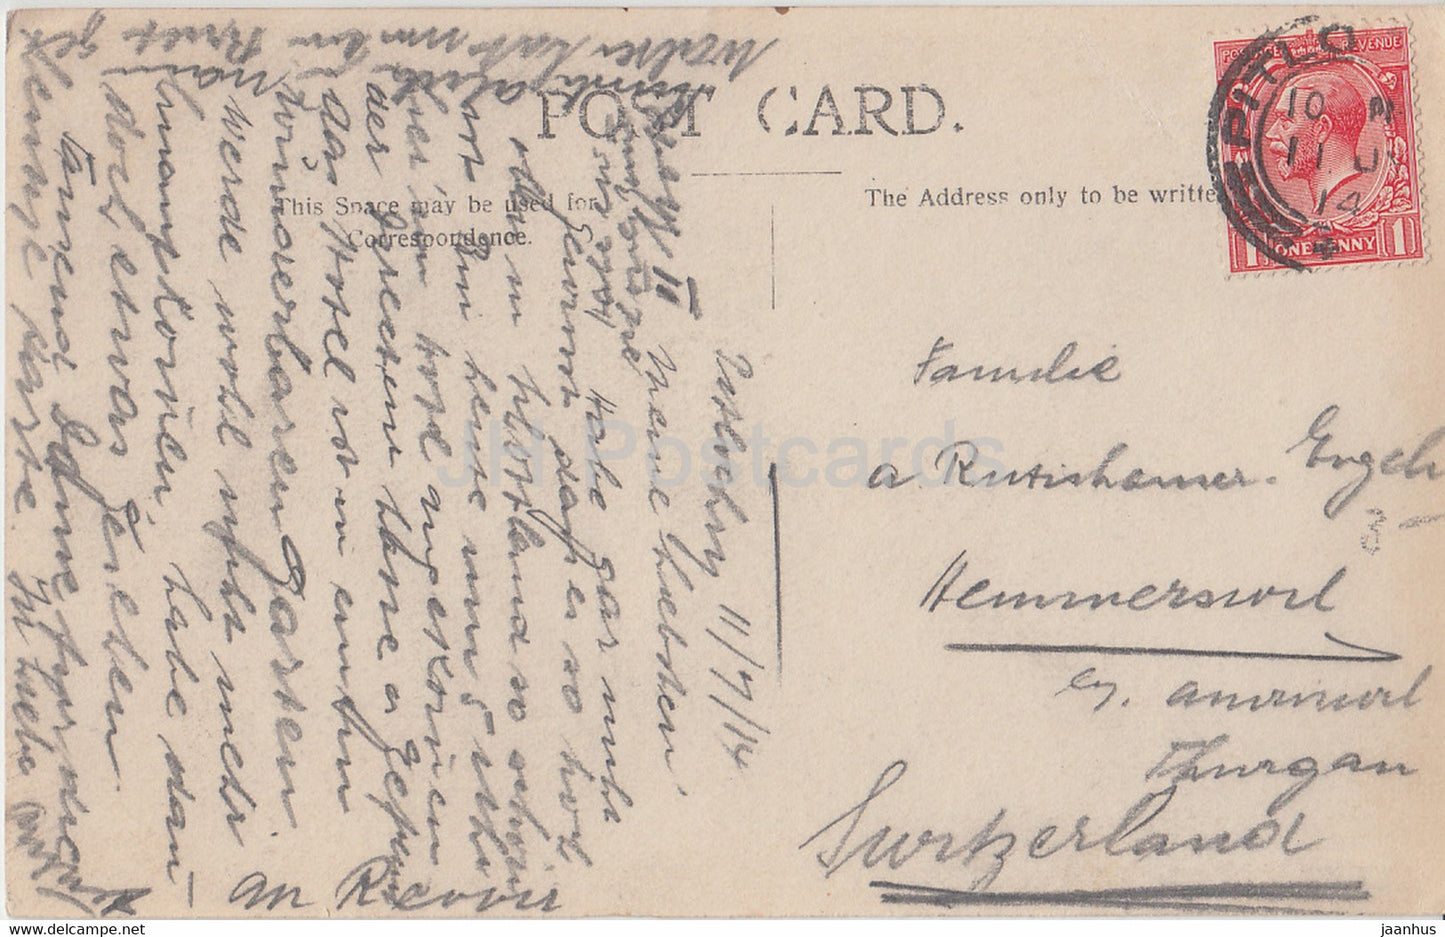 Pitlochry - Atholl Palace Hotel - alte Postkarte - 1914 - Schottland - Vereinigtes Königreich - gebraucht